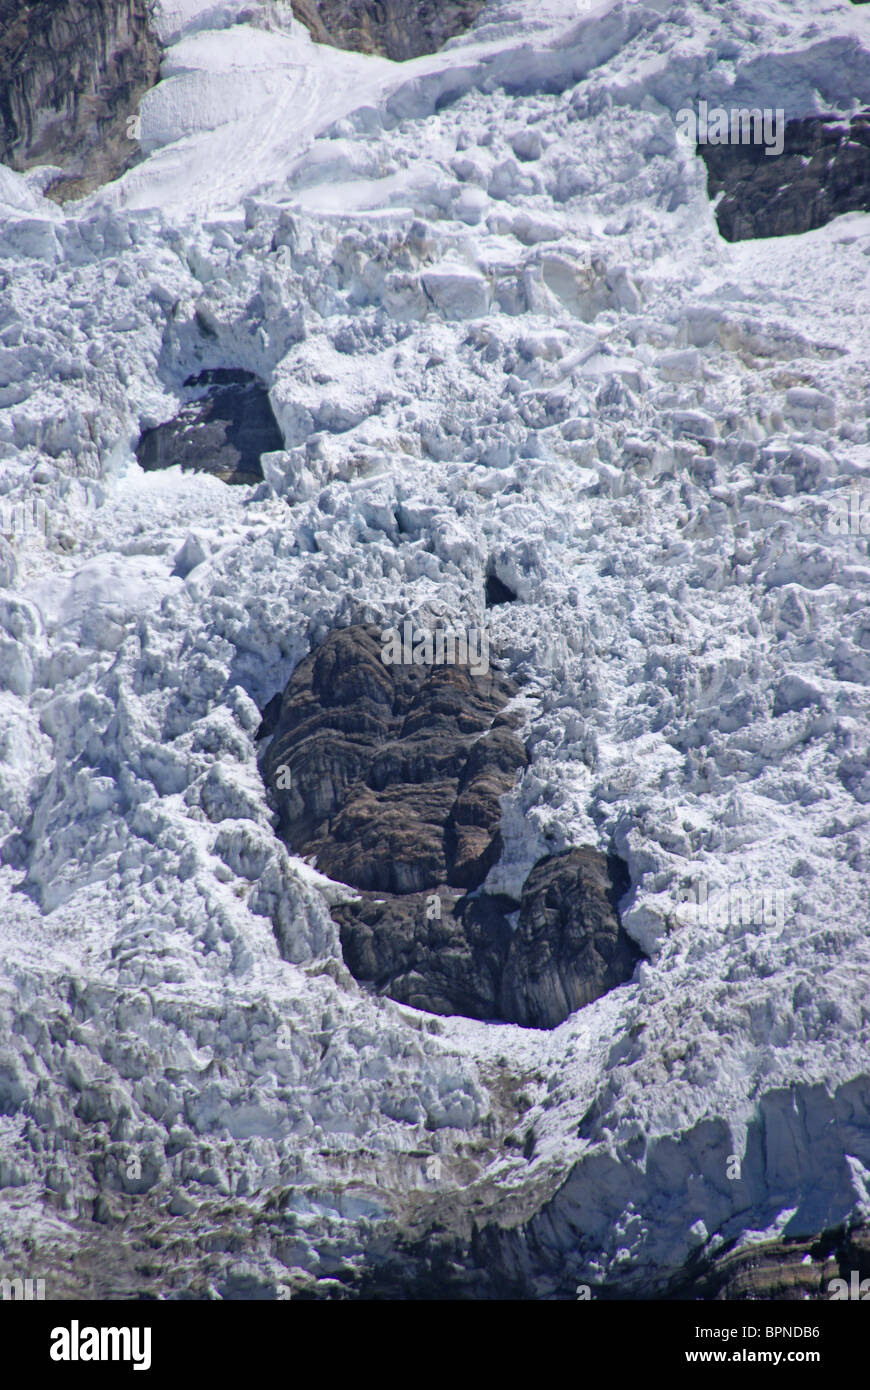 Cascade de glace de glacier dans la cordillère des Andes, Huayhuash, Andes, Pérou, Amérique du Sud Banque D'Images